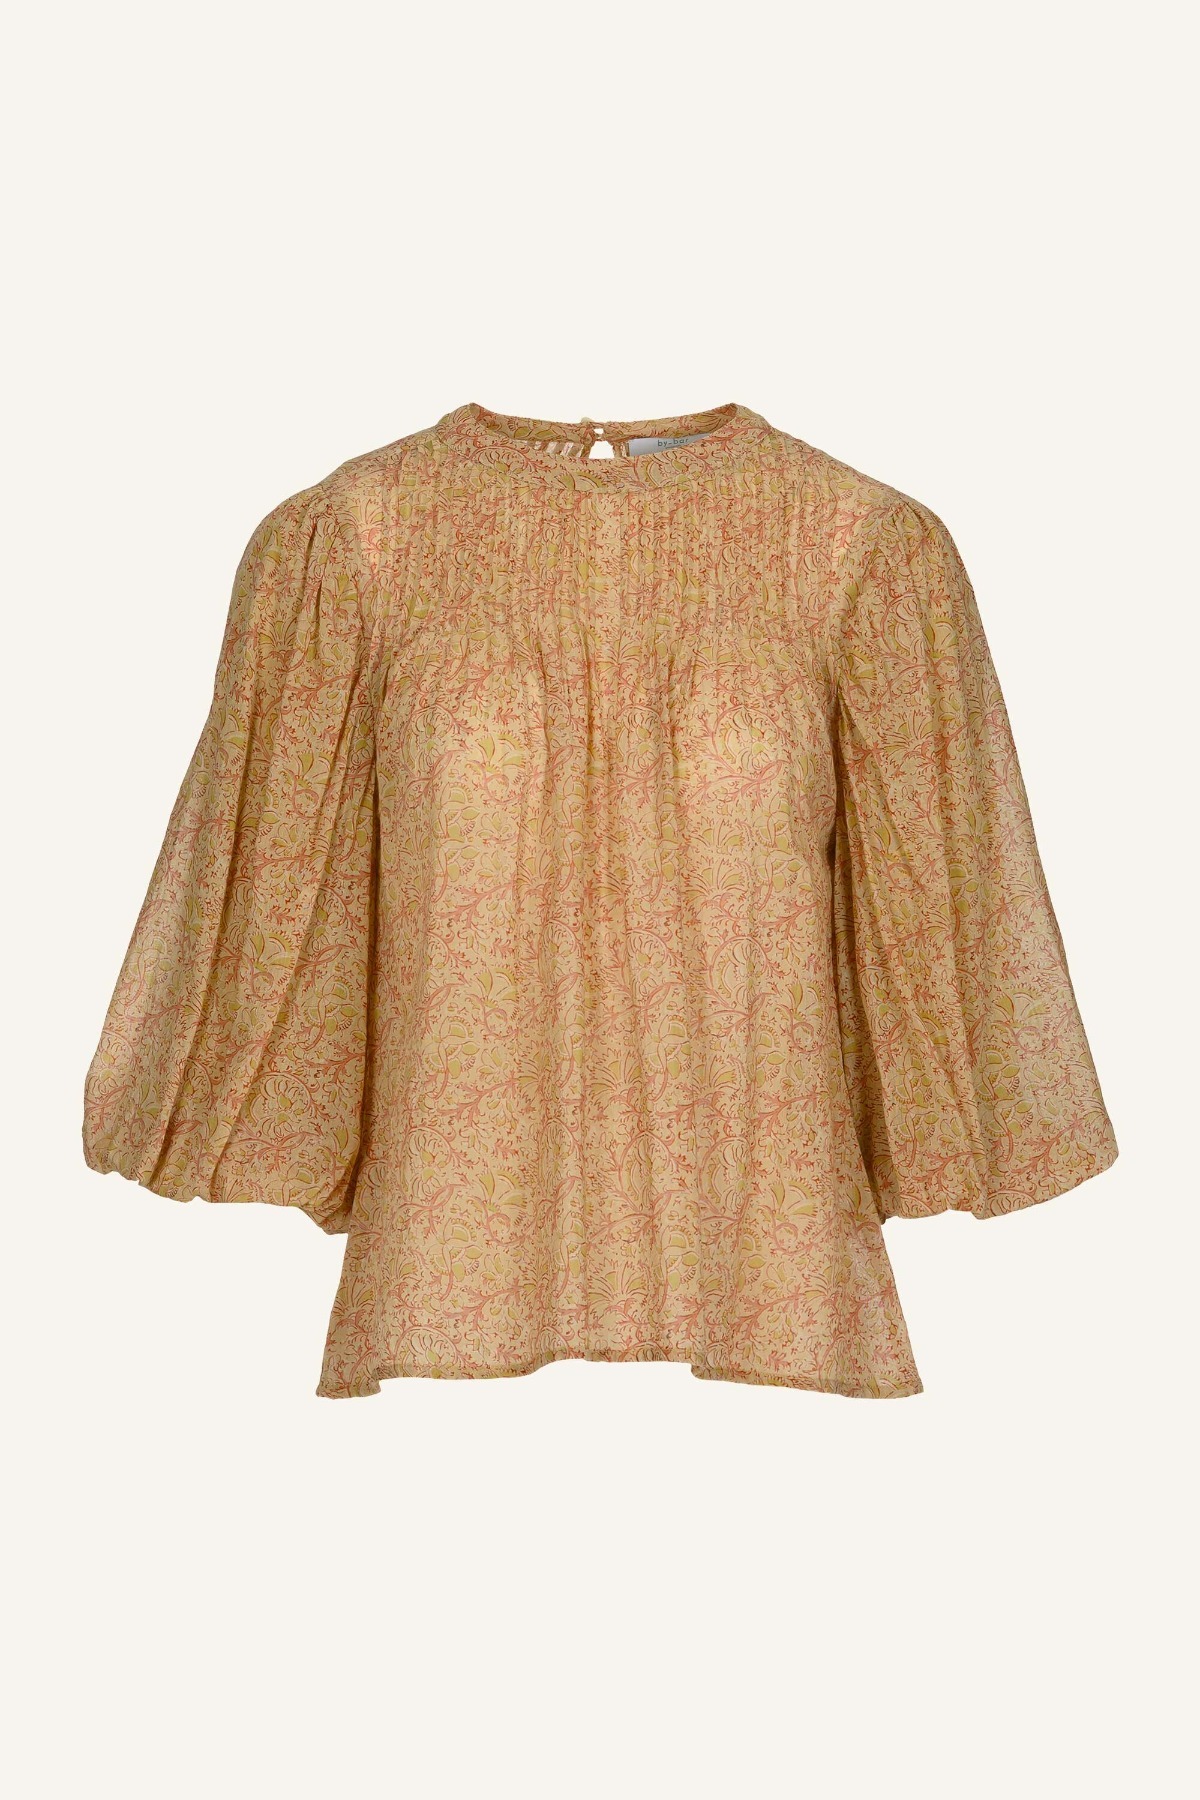 by-bar amsterdam - puck jaipur blouse - jaipur print 5